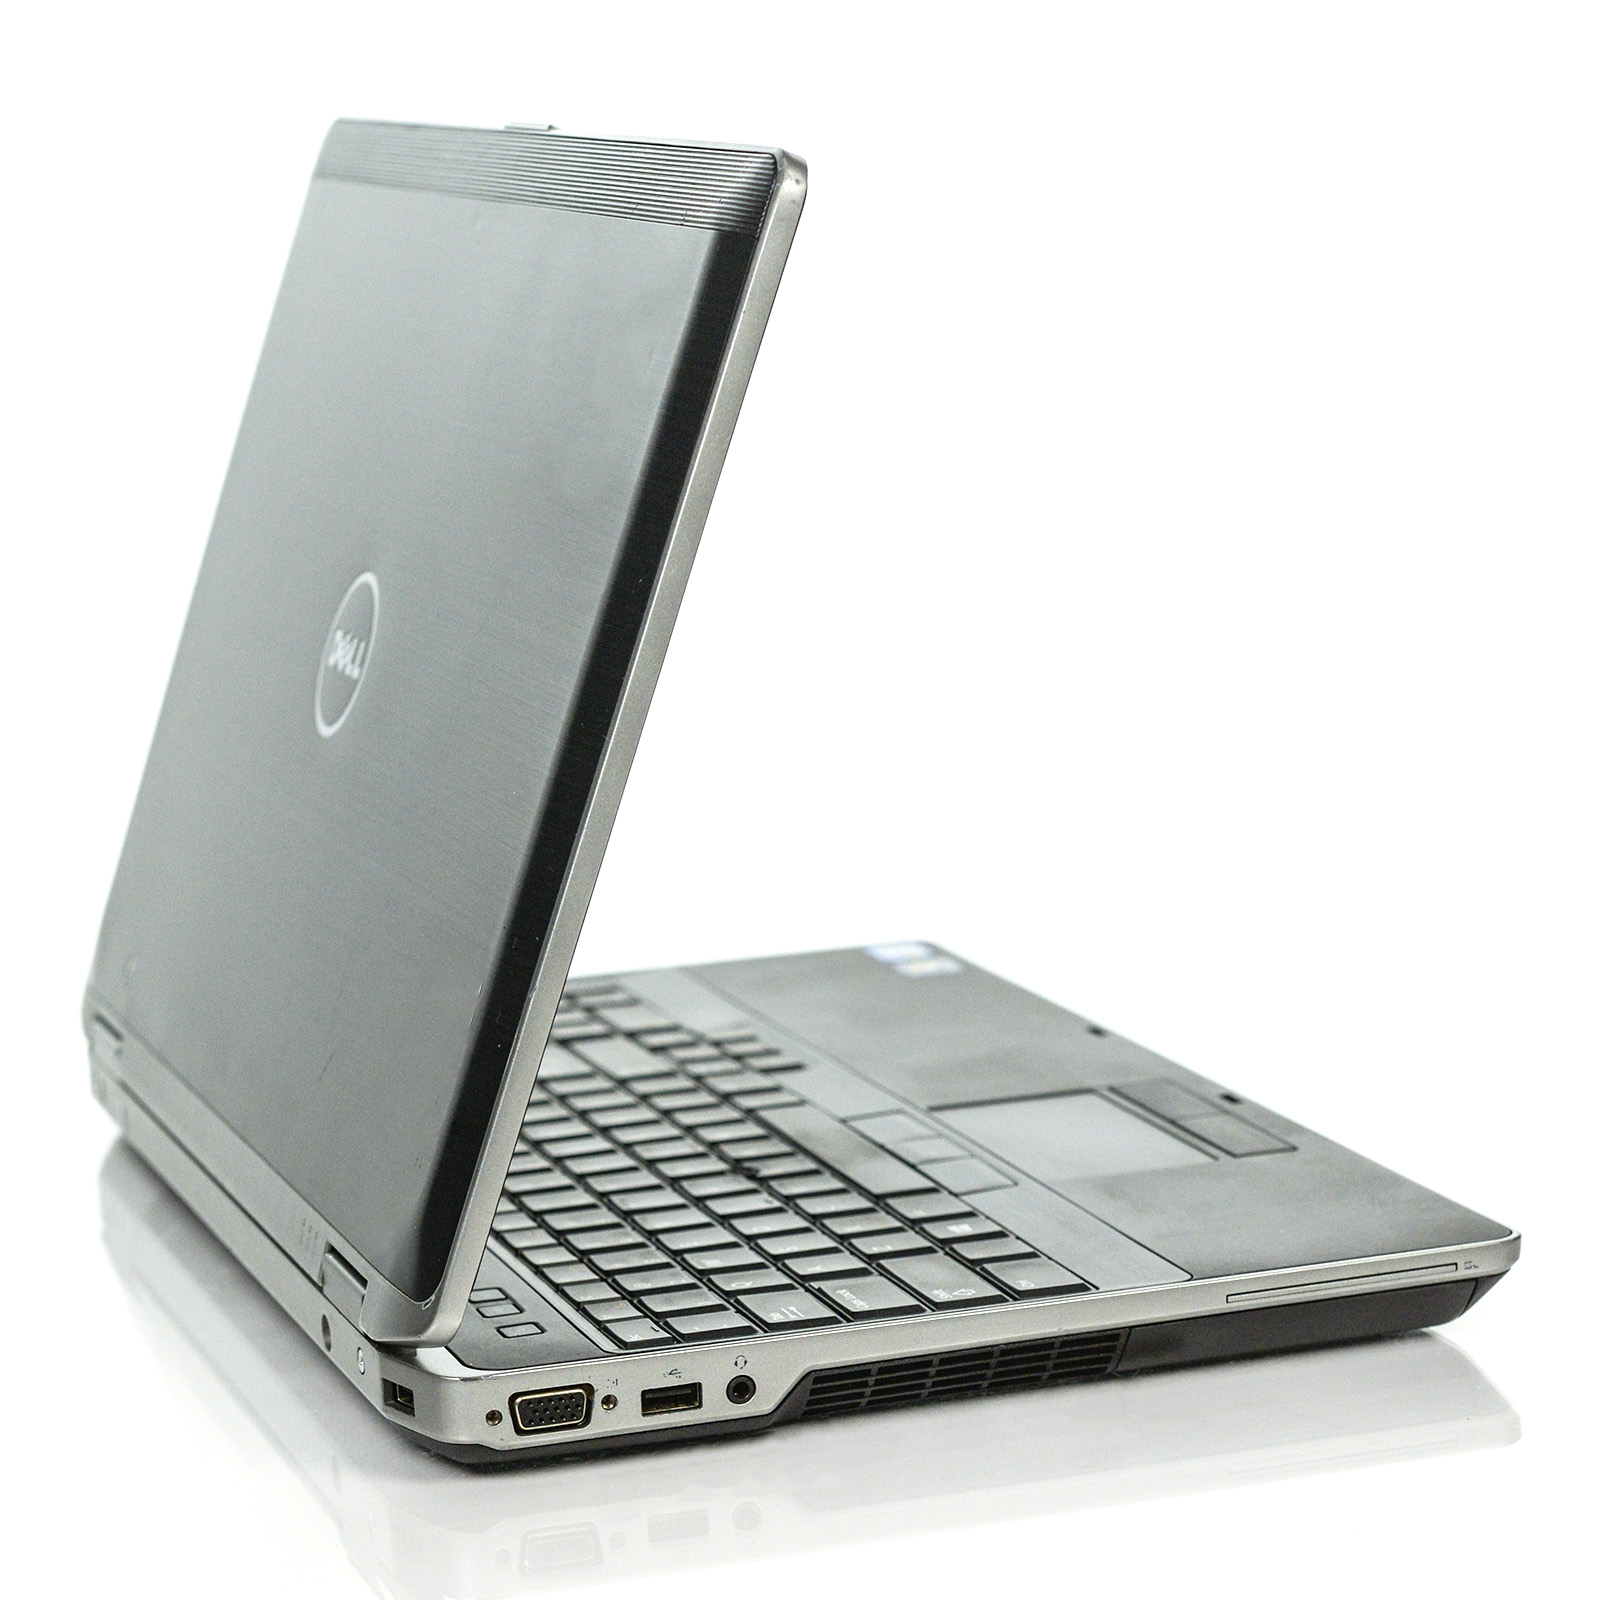 Restored Dell Latitude E6530 Laptop i7 Dual-Core 8GB 256GB SSD Win 10 Pro B v.CA (Refurbished) - image 4 of 7